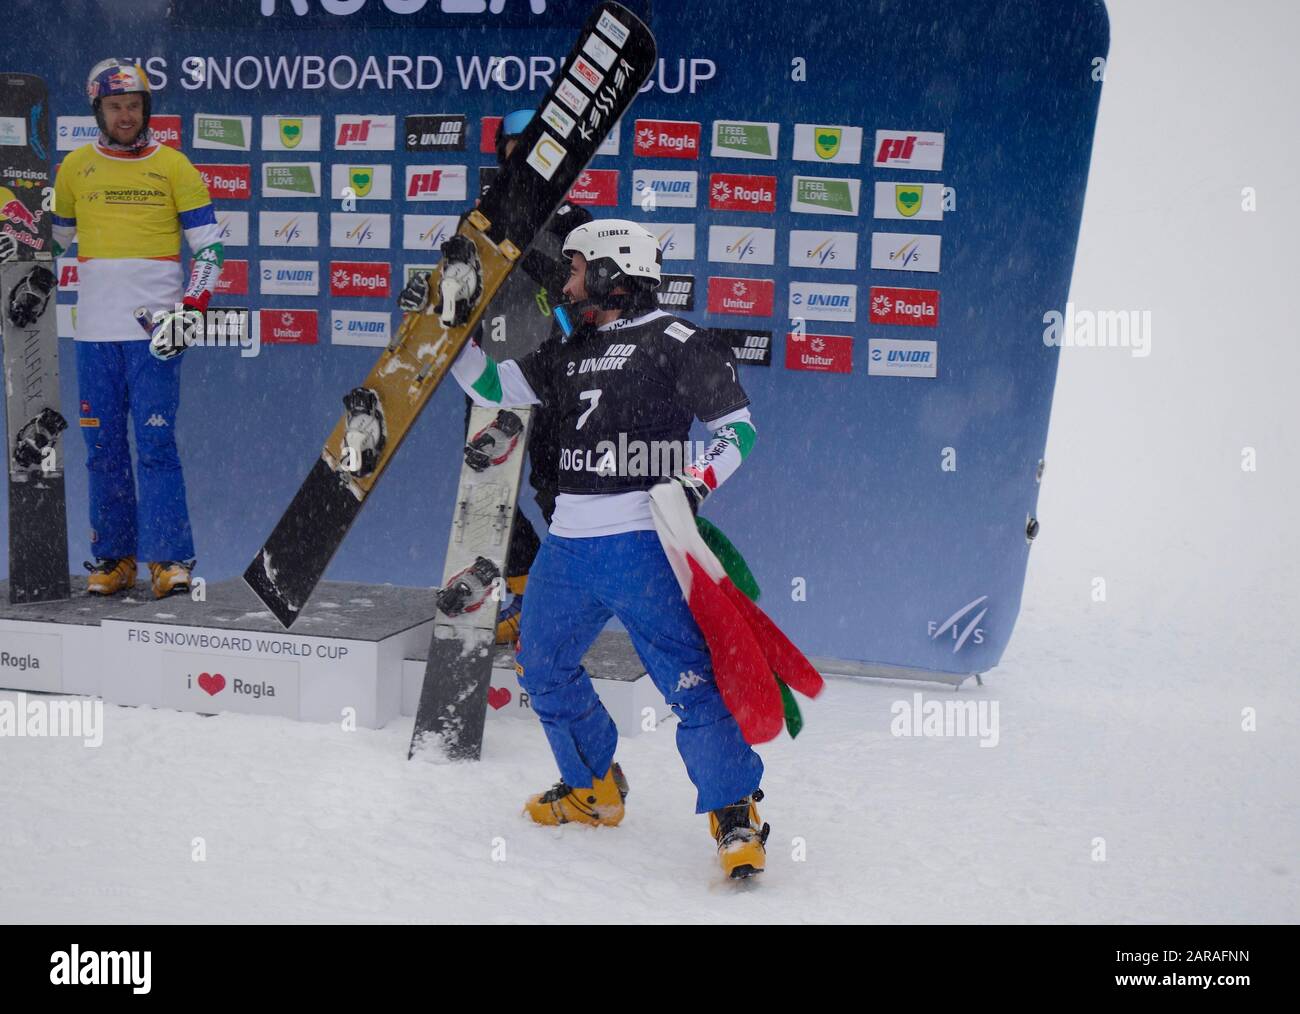 Edwin Corrati (ITA) celebra la victoria de FIS Snowboard World cup Parallel Giant Slalom- Rogla 2020. Foto de stock